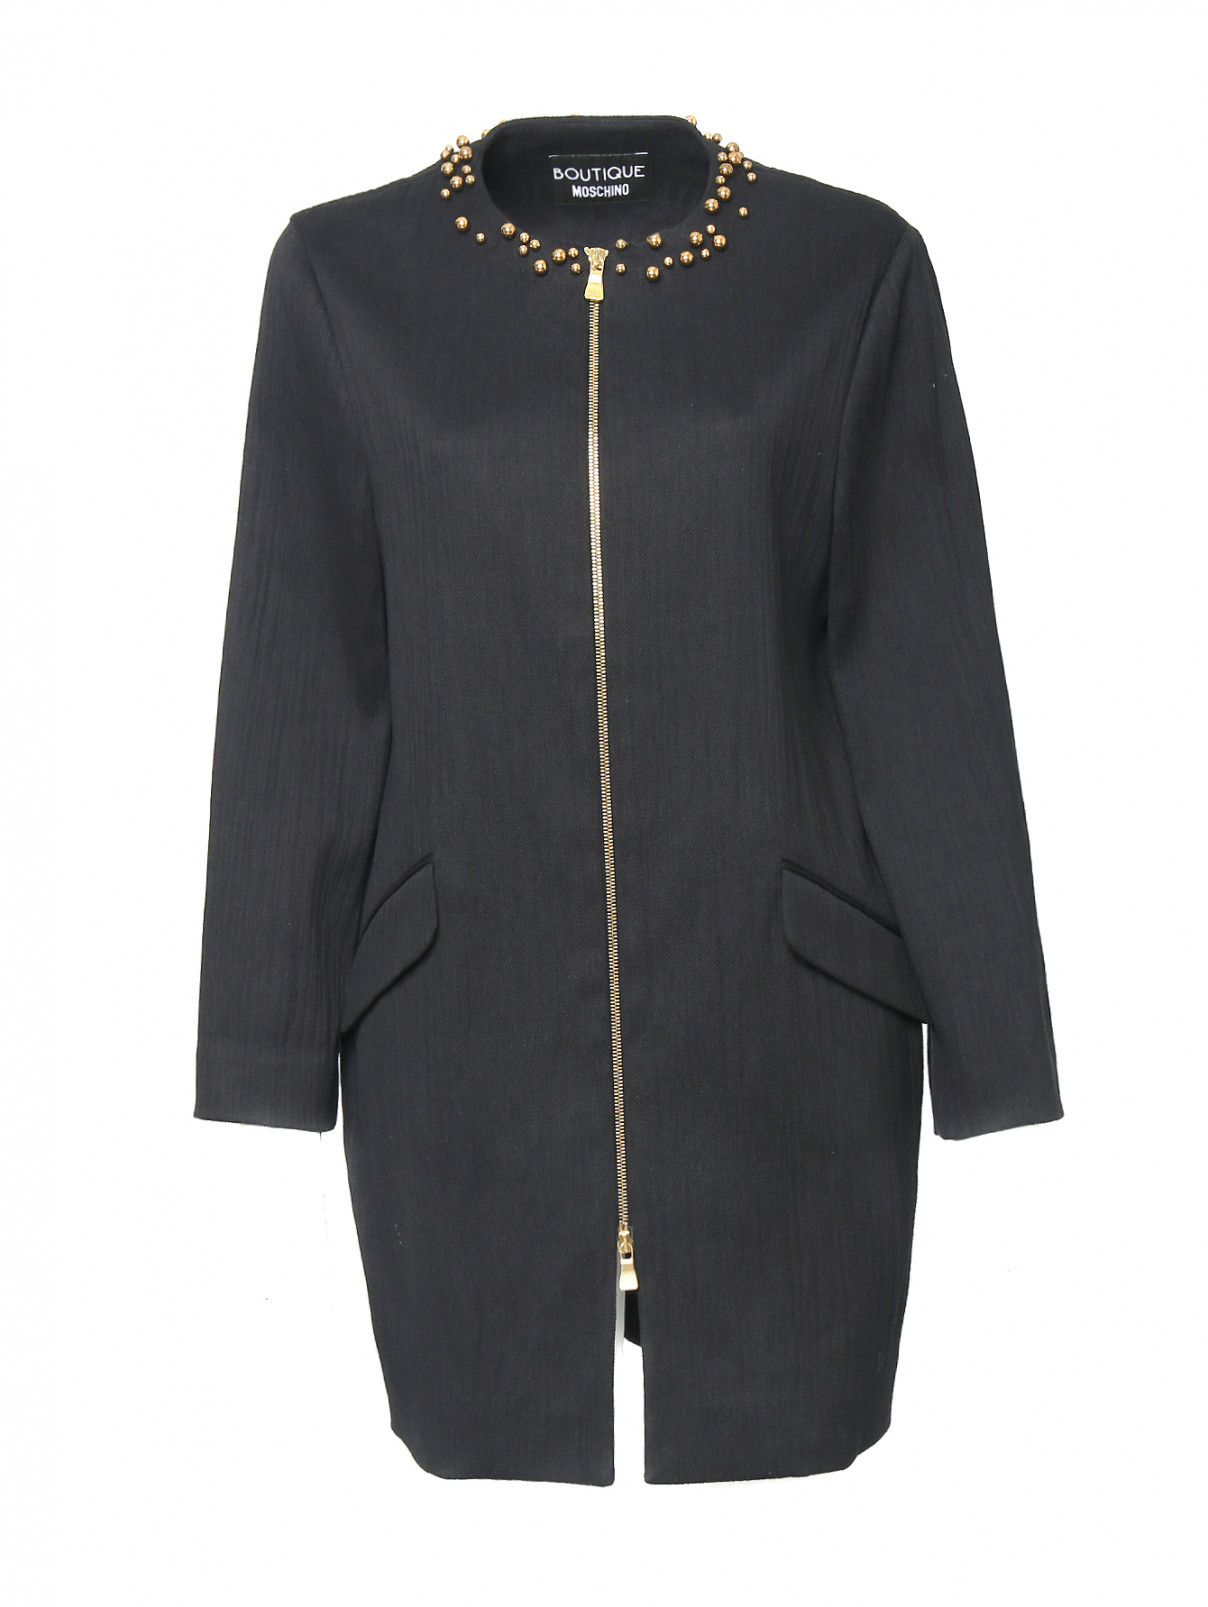 Пальто из хлопка на молнии Moschino Boutique  –  Общий вид  – Цвет:  Черный